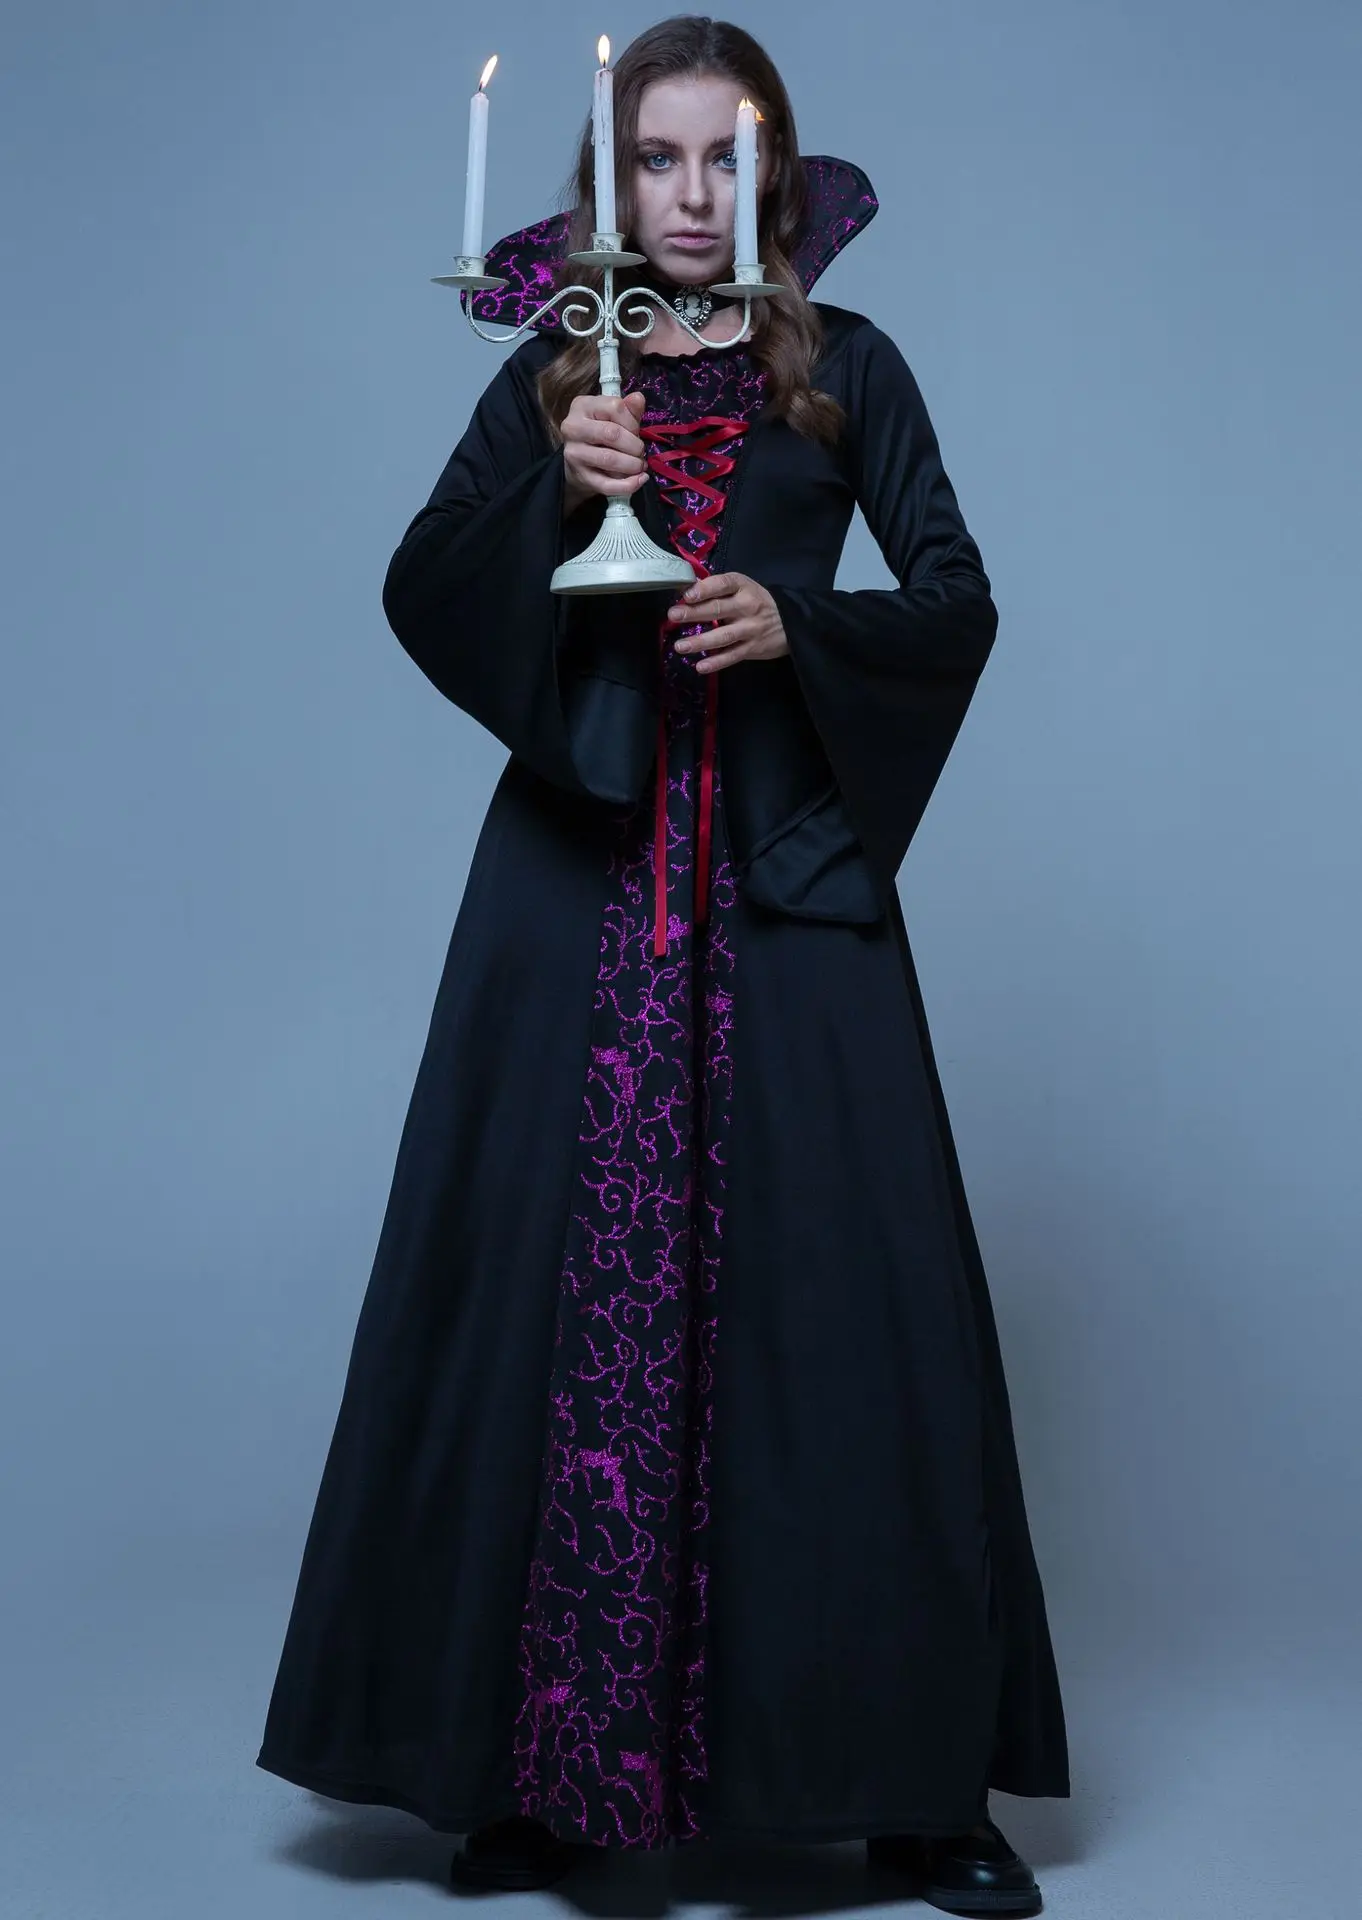 Robe gótico retrô vampiro fantasia, robe halloween, corte medieval, rainha vestido